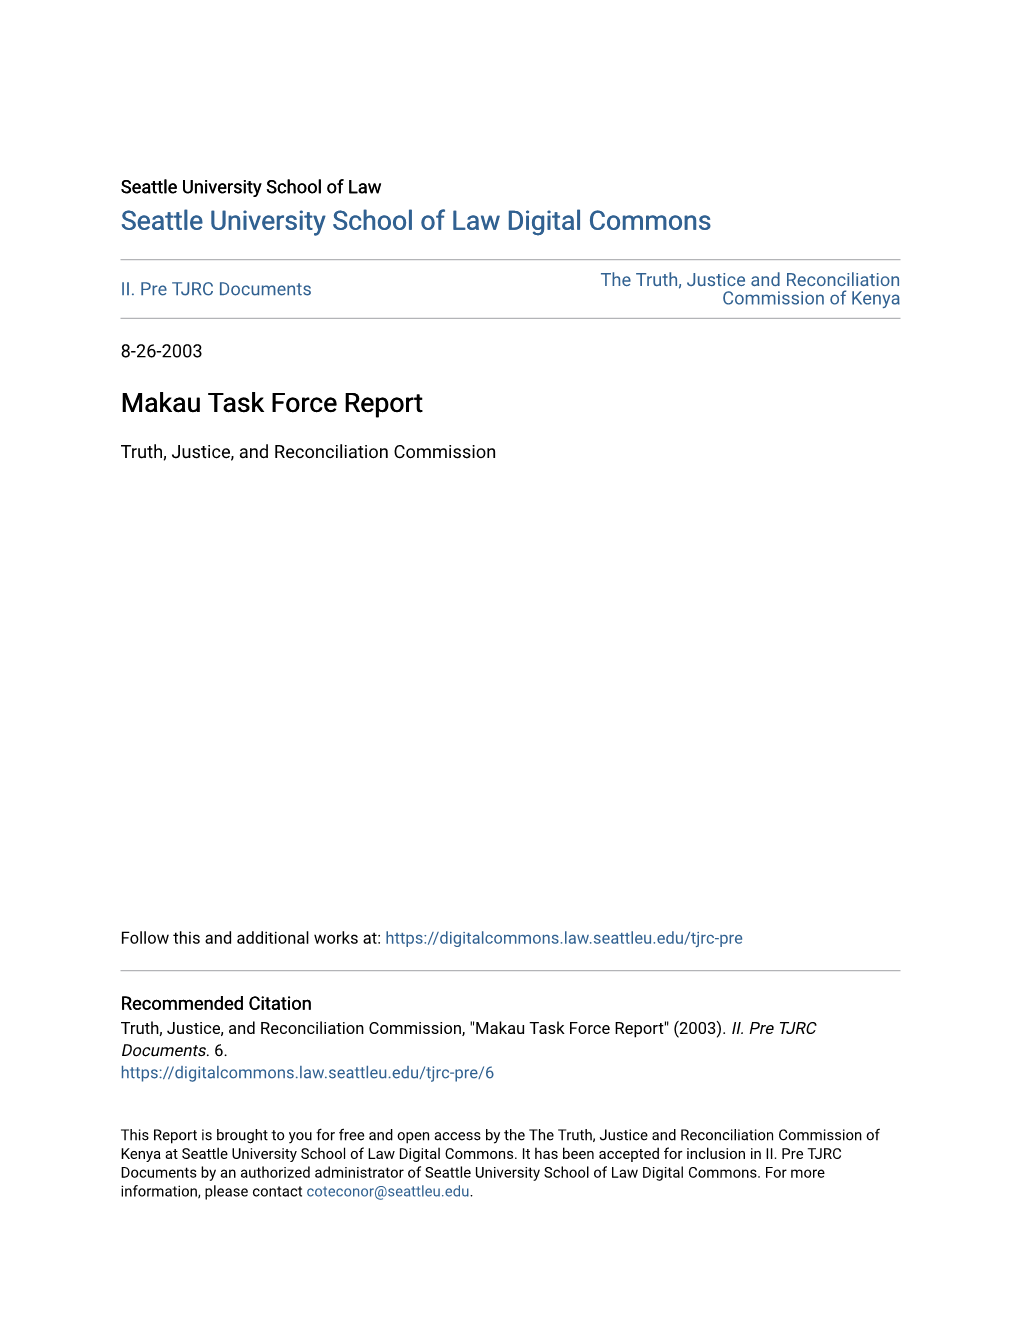 Makau Task Force Report